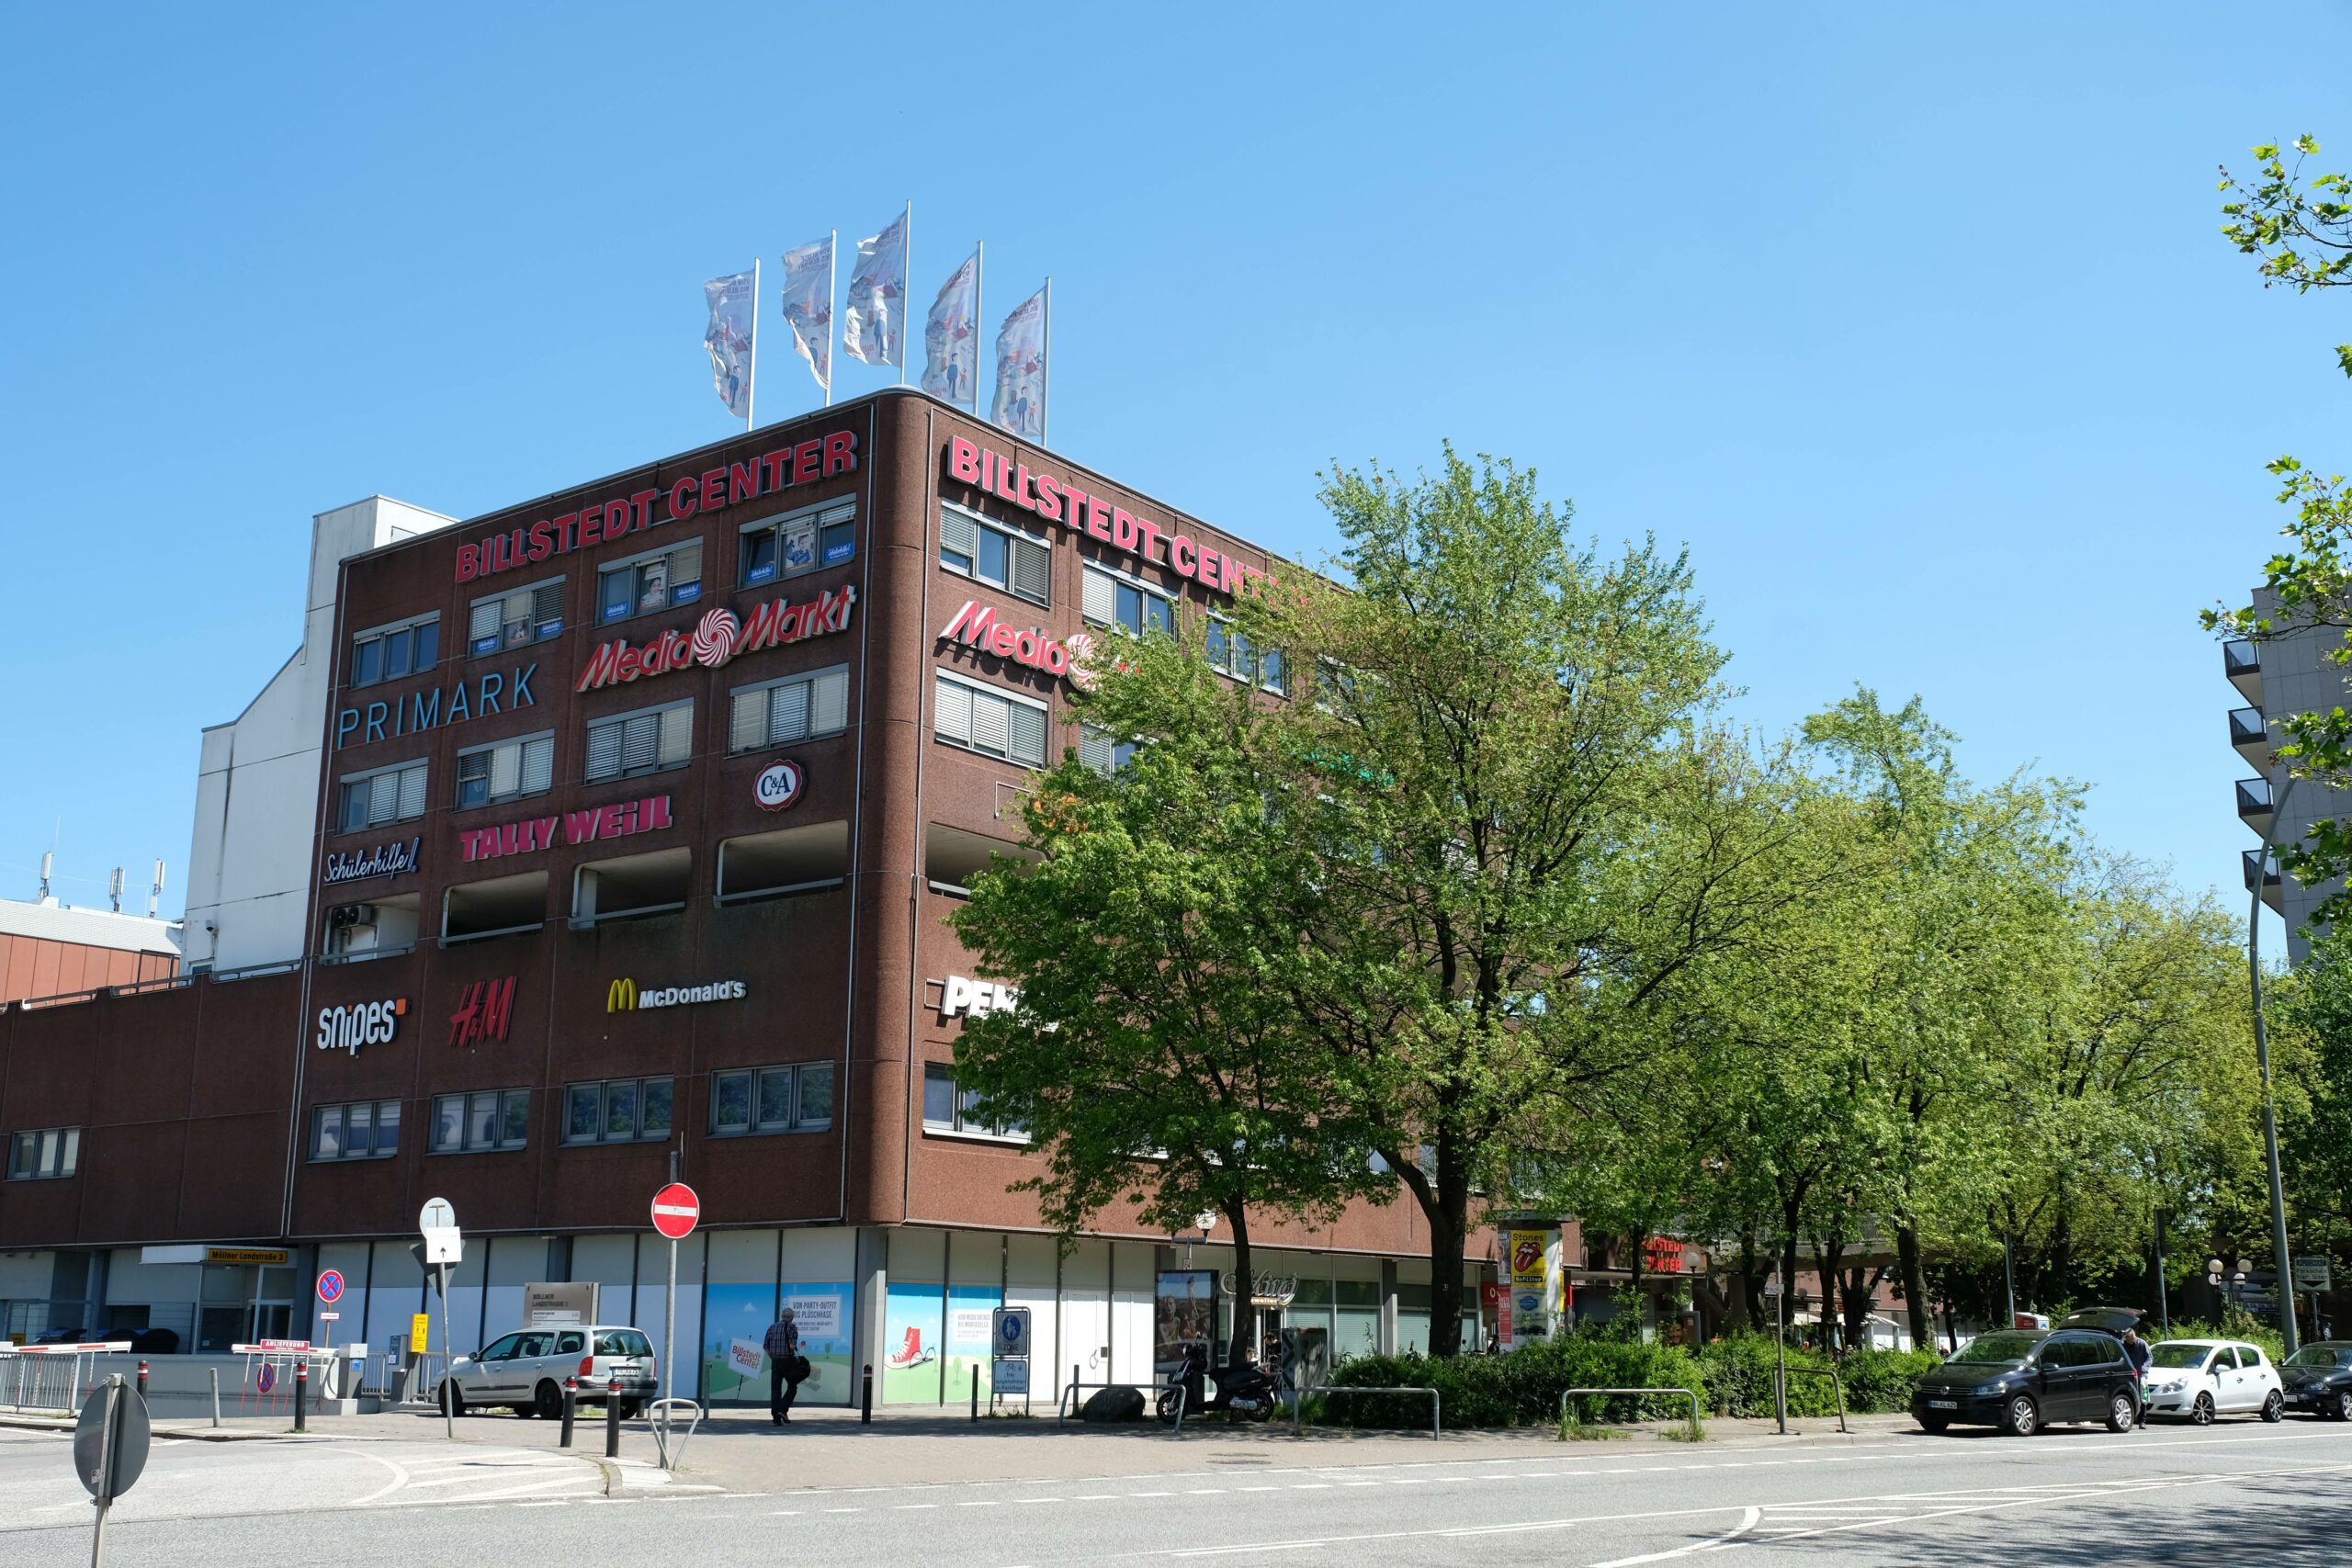 Die Otto-Familie will den Immobilienkonzern Deutsche Euroshop, zu dem auch das Billstedt-Center gehört, übernehmen. (Archivbild)